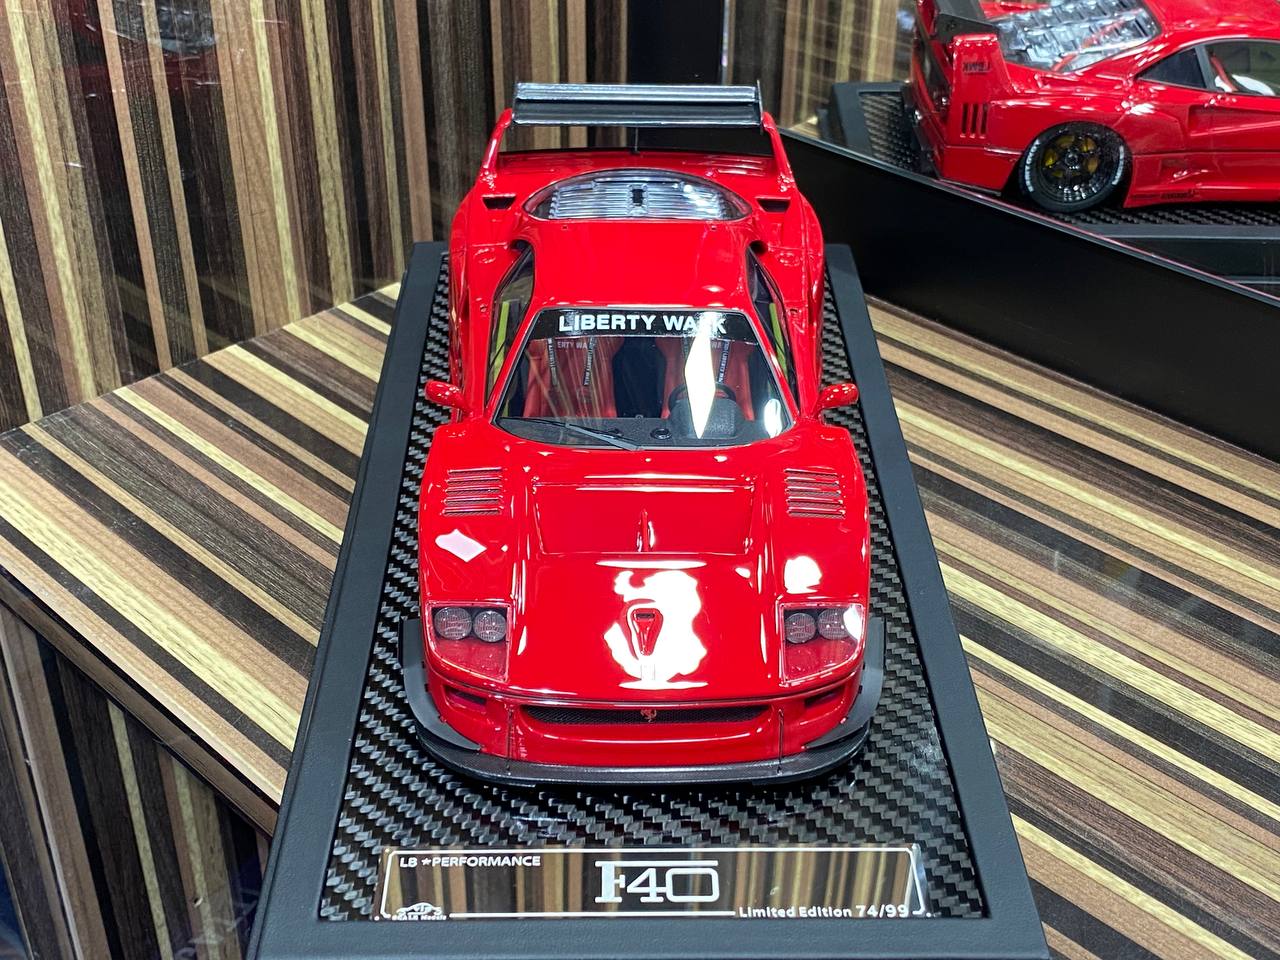 Ferrari F40 LB Performance VIP Models